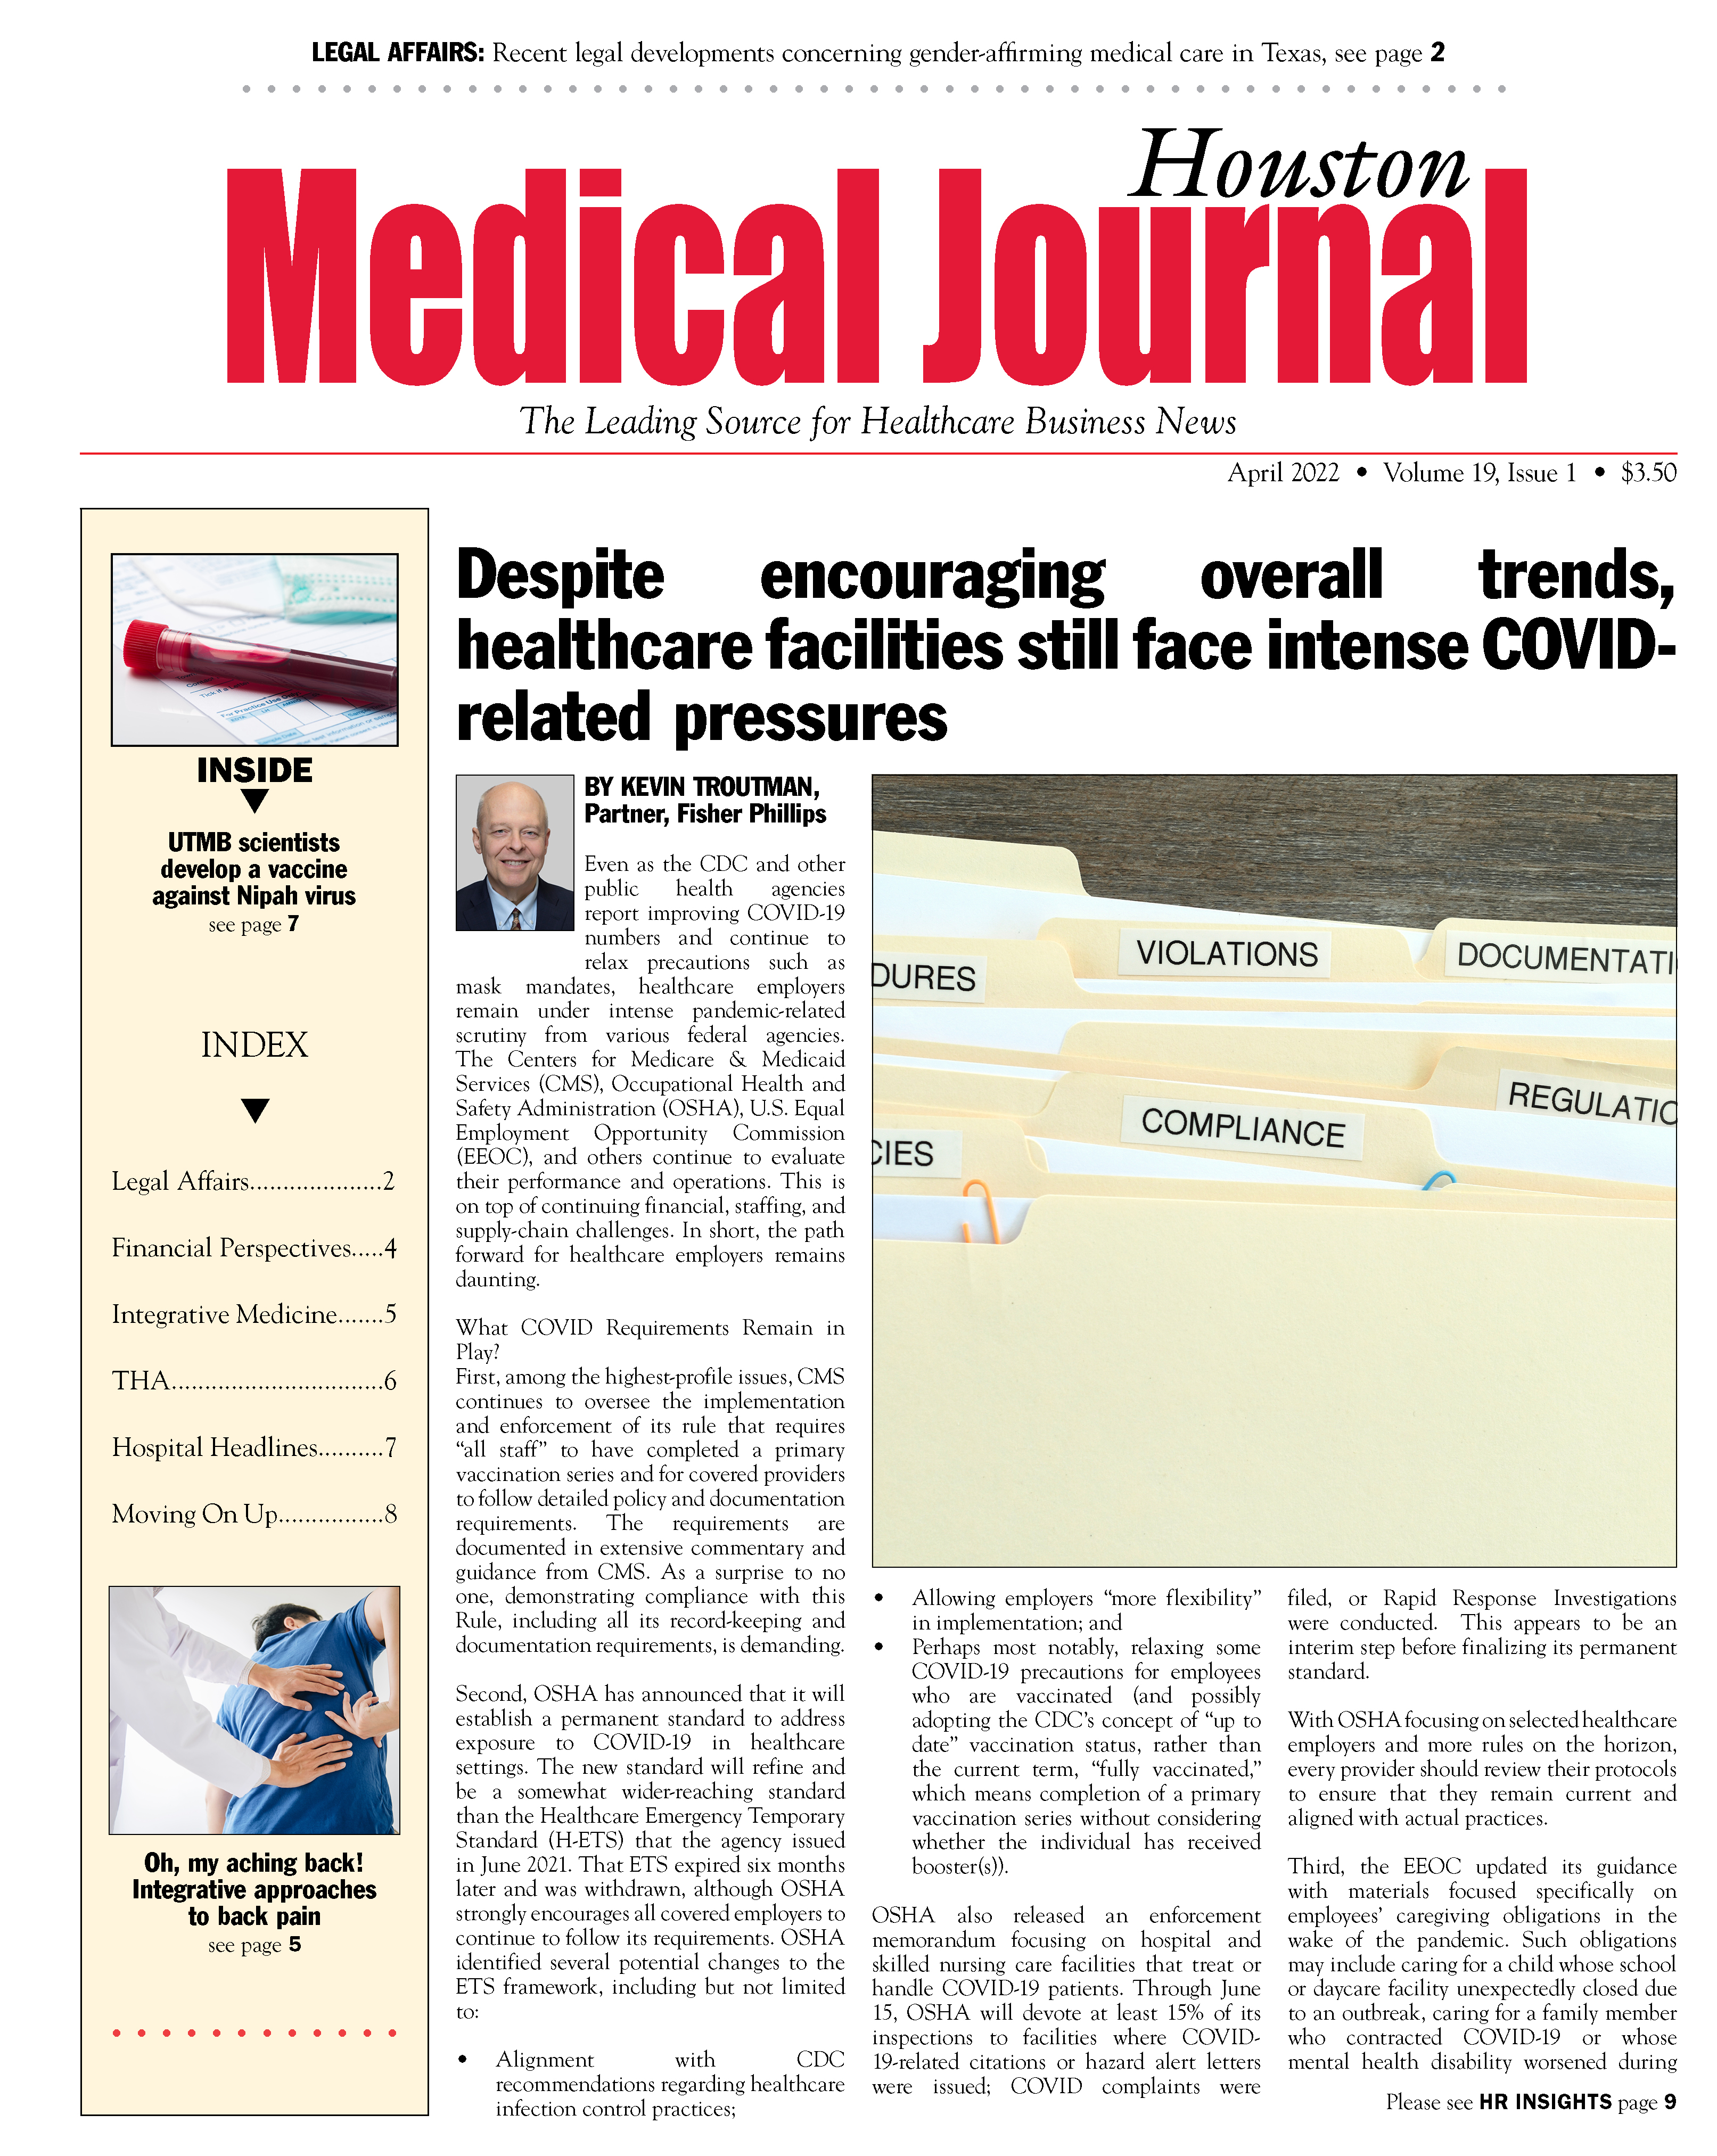 Medical Journal April 2022 Digital Edition